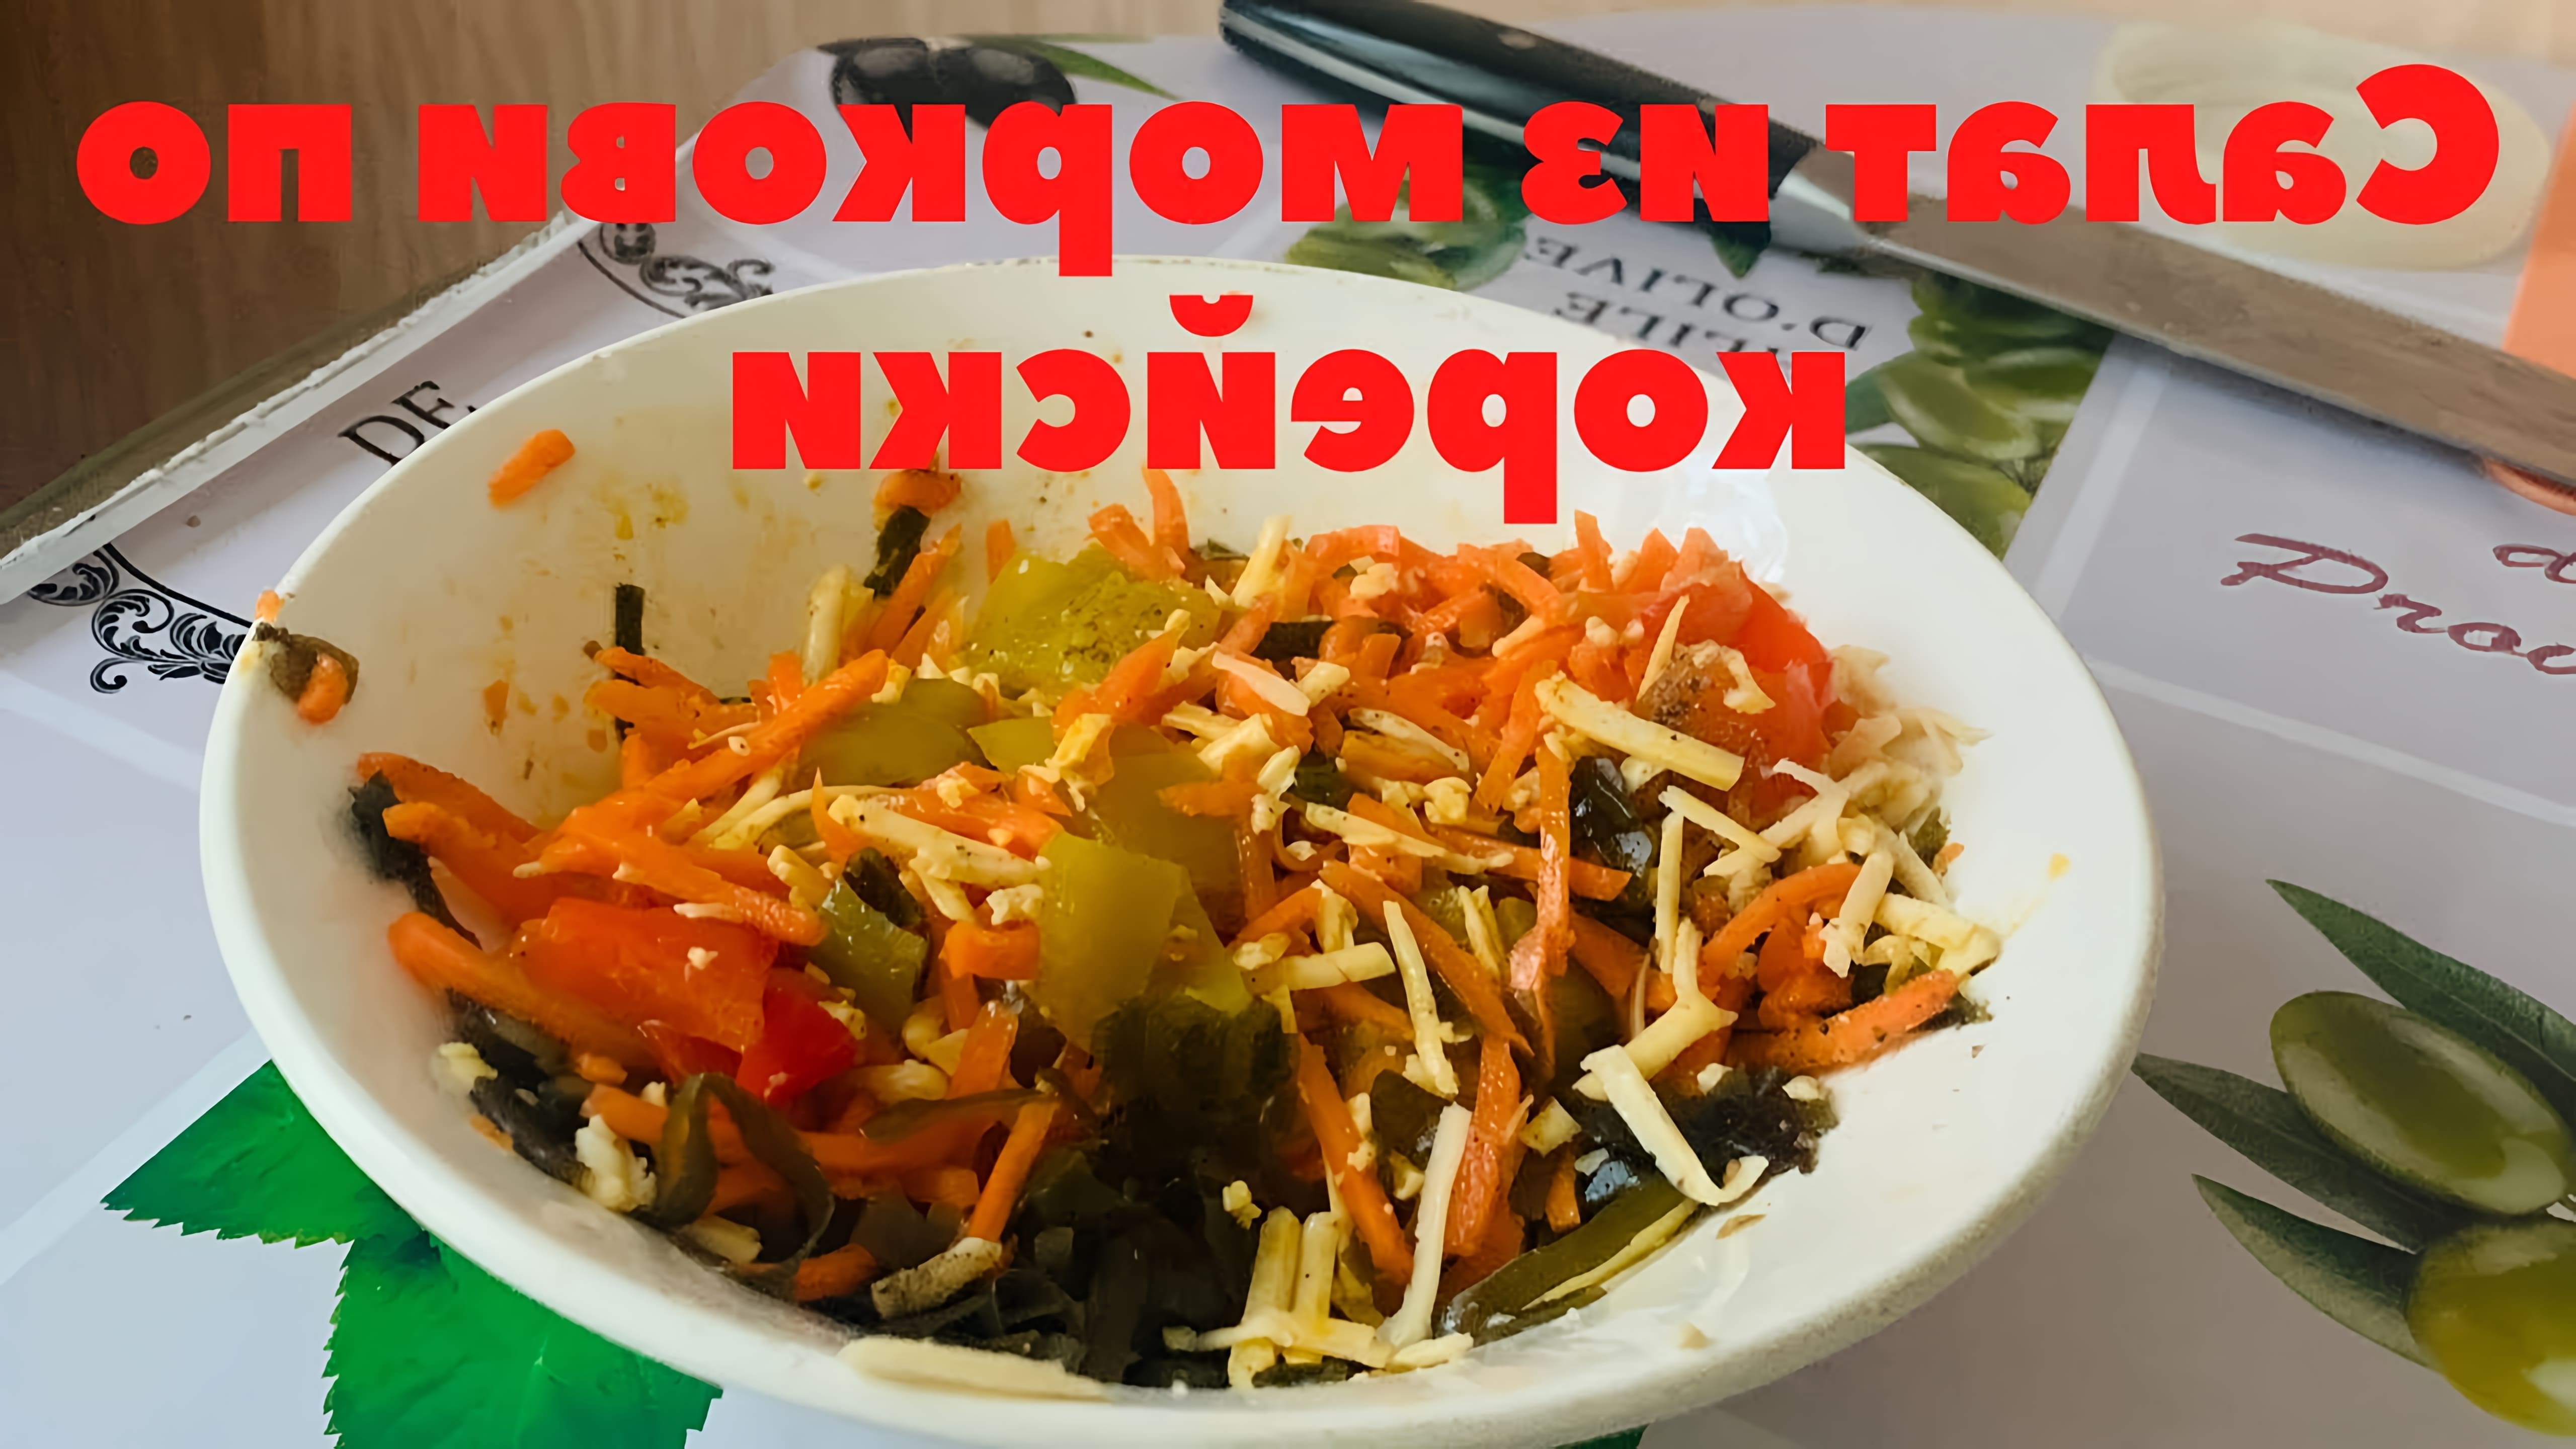 В этом видео демонстрируется рецепт быстрого и вкусного салата с морковью по-корейски и морской капустой